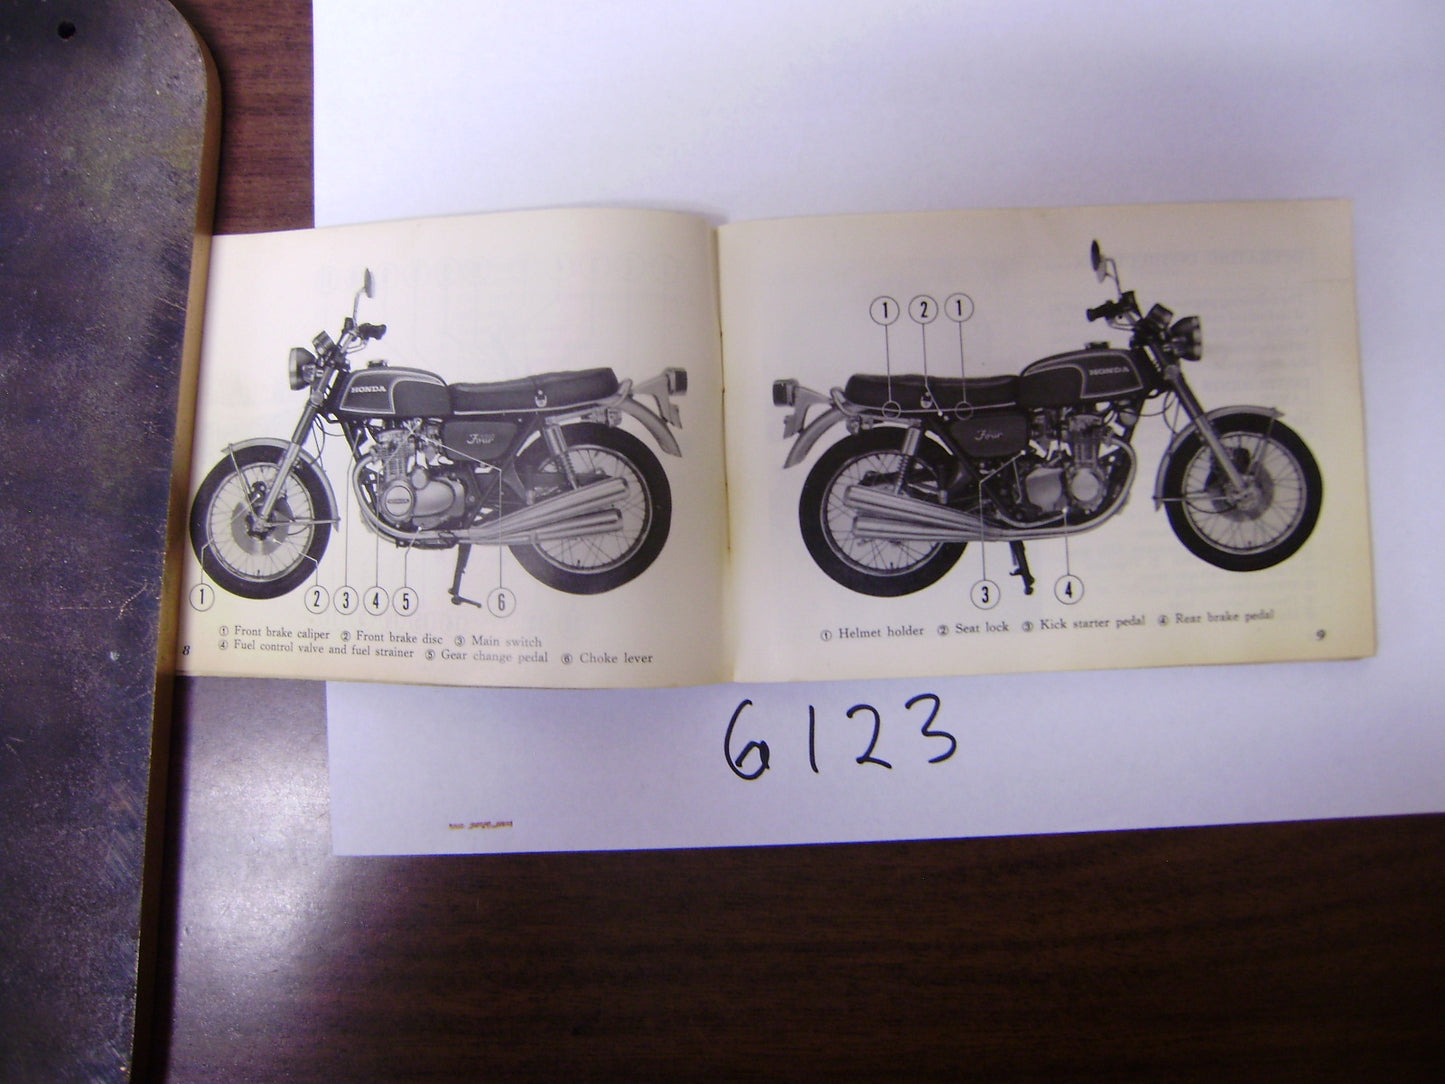 Honda CB350F Manual sku 6123